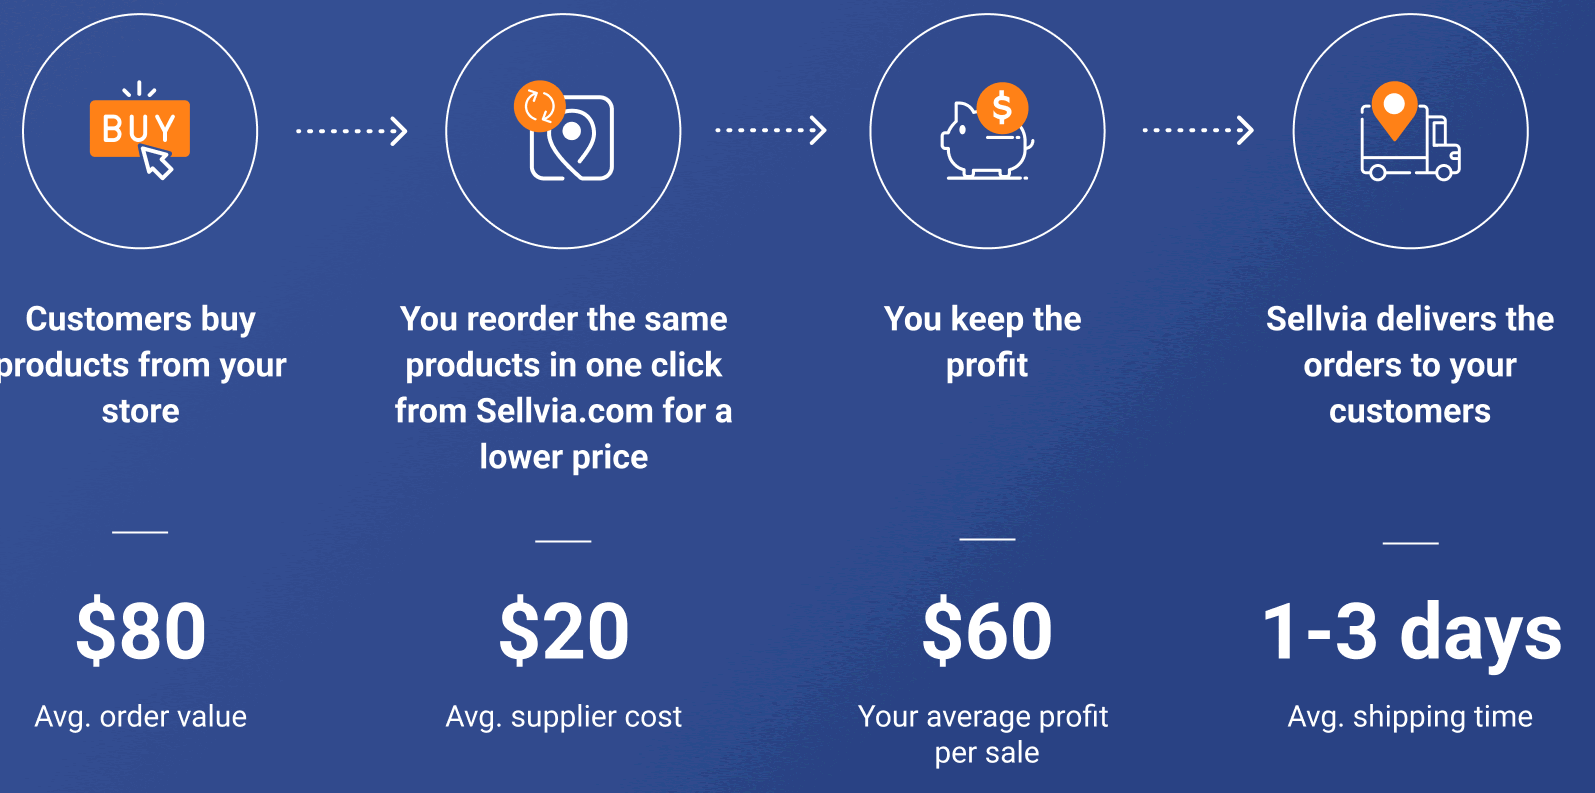 Comment fonctionne Sellvia.com